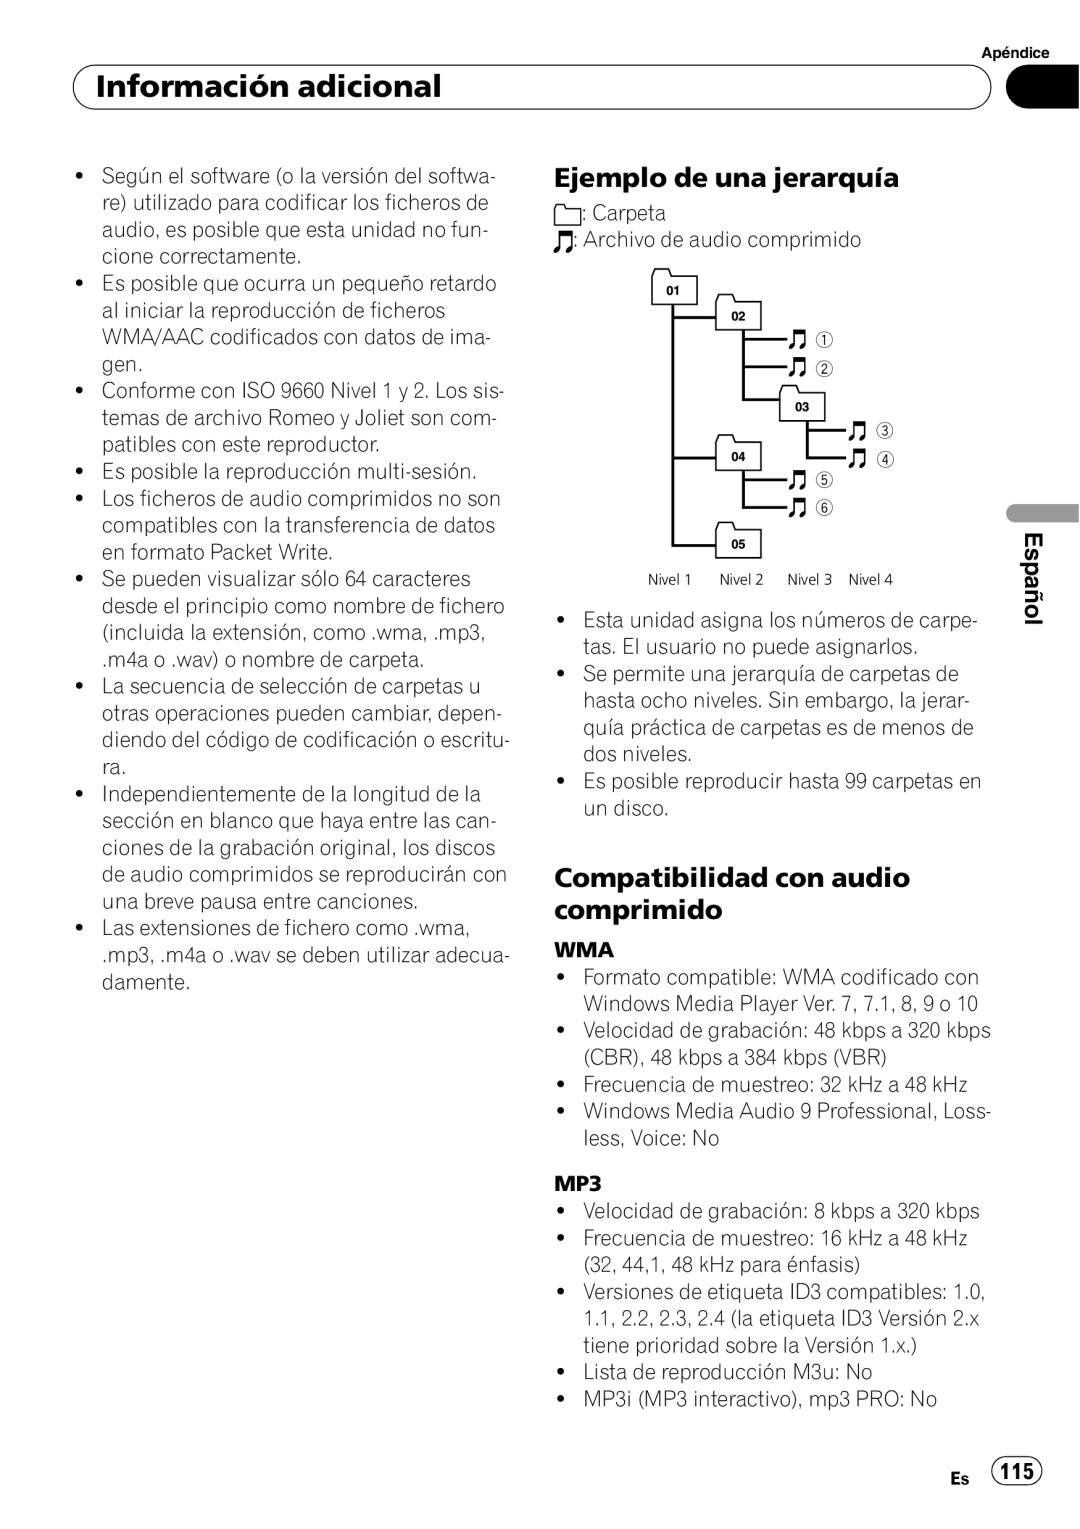 Pioneer SRC7127-B/N operation manual Ejemplo de una jerarquía, Compatibilidad con audio comprimido, Información adicional 